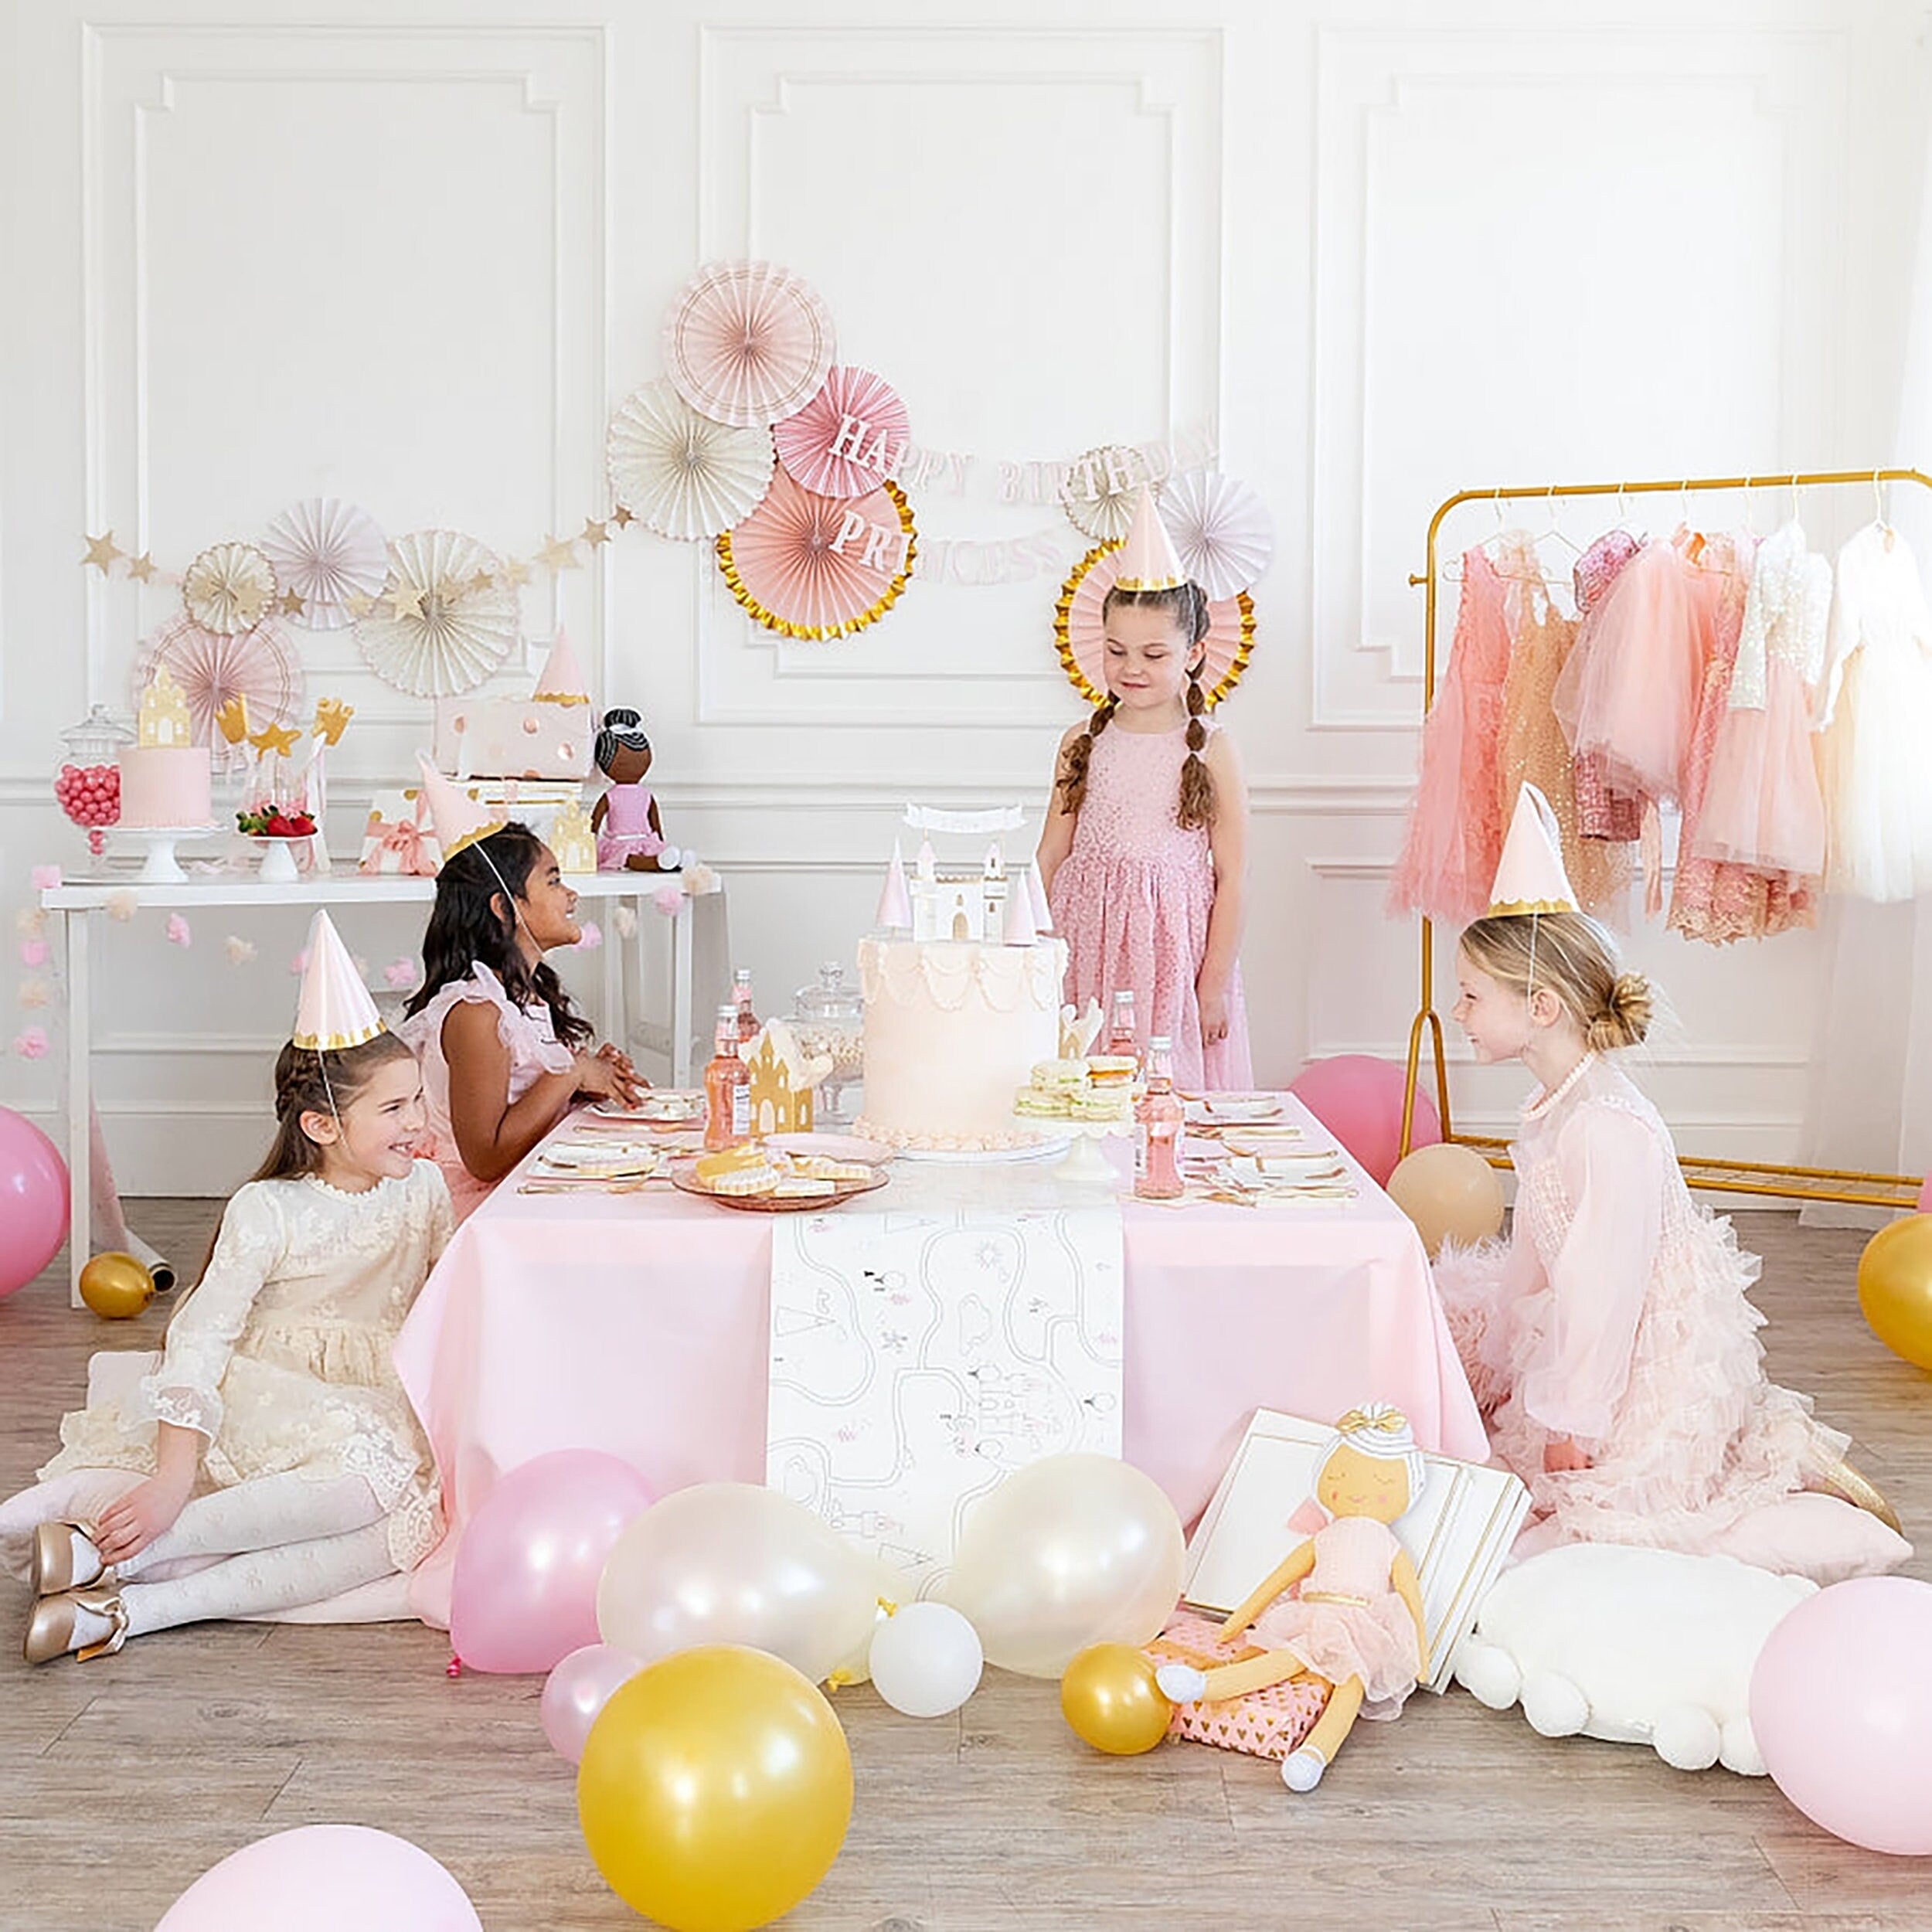 Castle Balloon | Princess Balloon - Princess Theme Party Decorations - Princess Decorations - Princess Tea Party - Castle Birthday Party